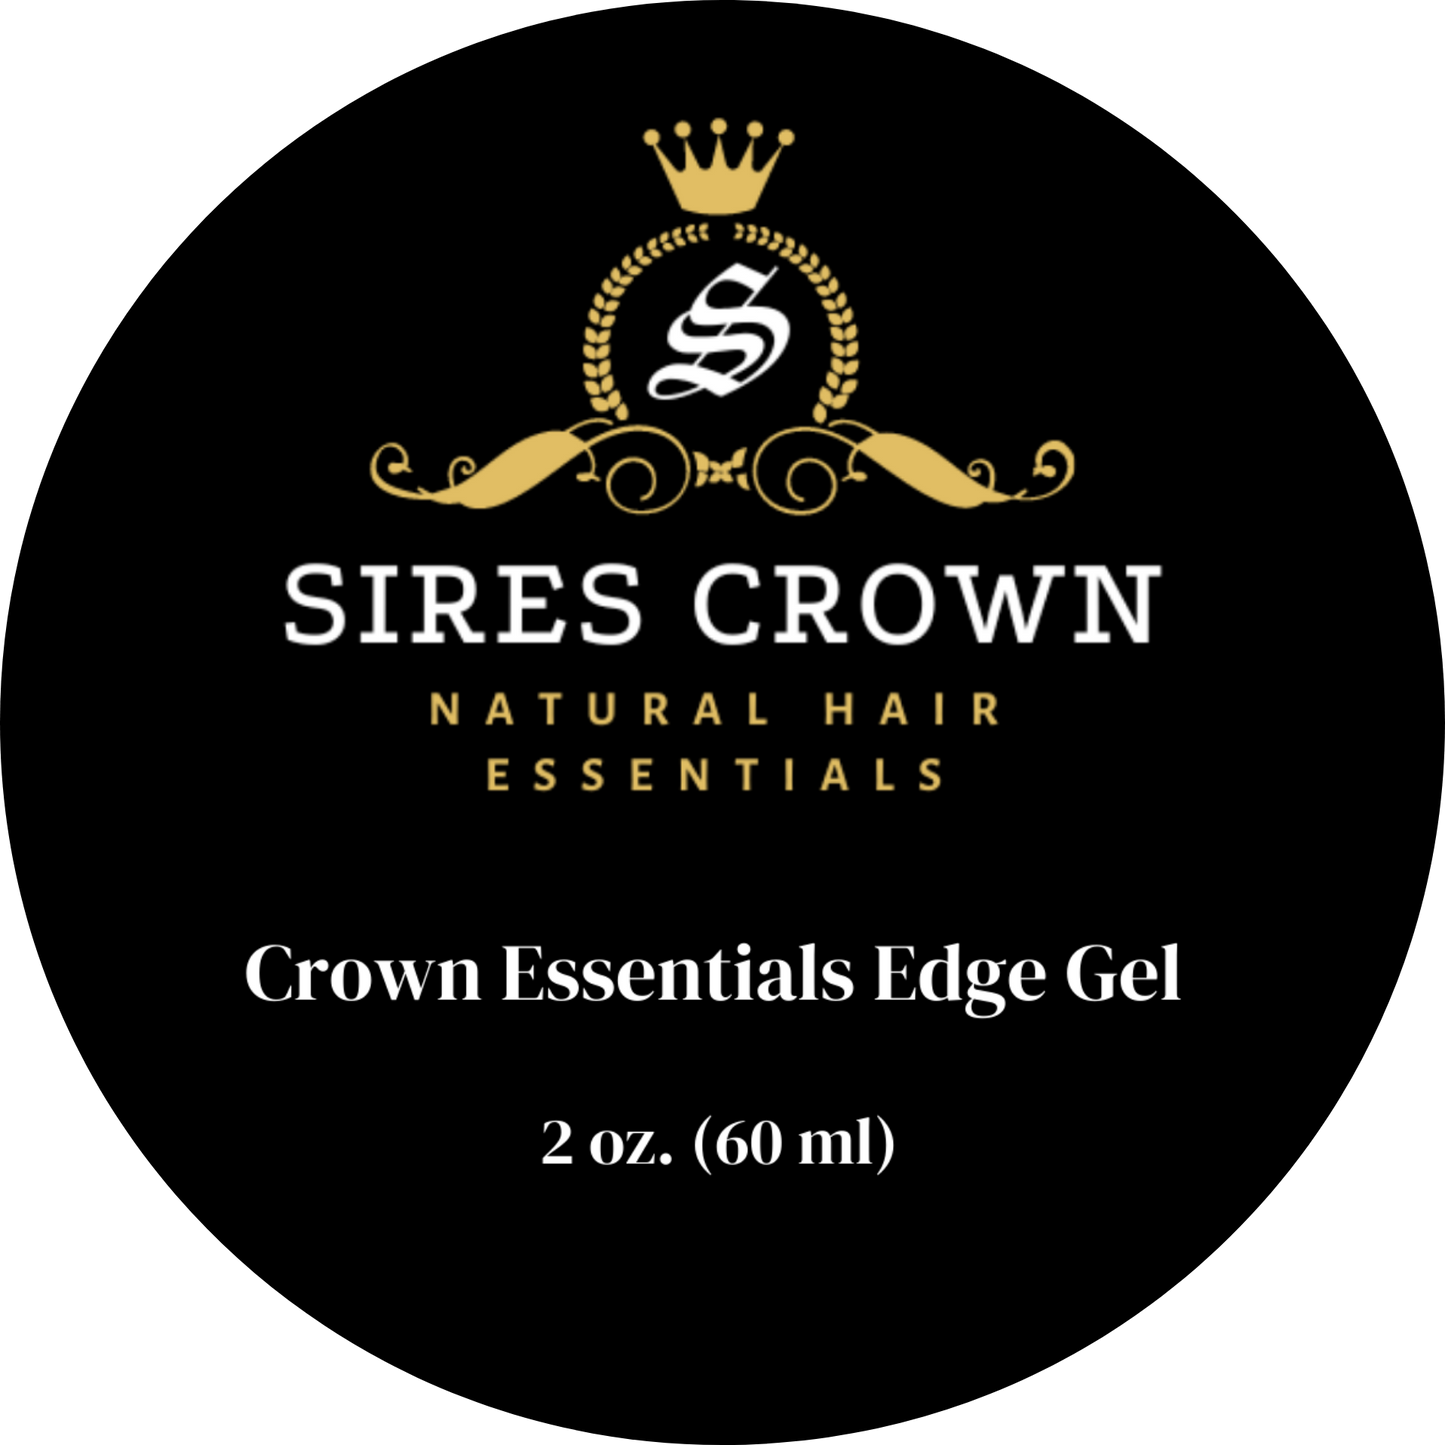 Crown Essentials Edge Gel - 2 oz